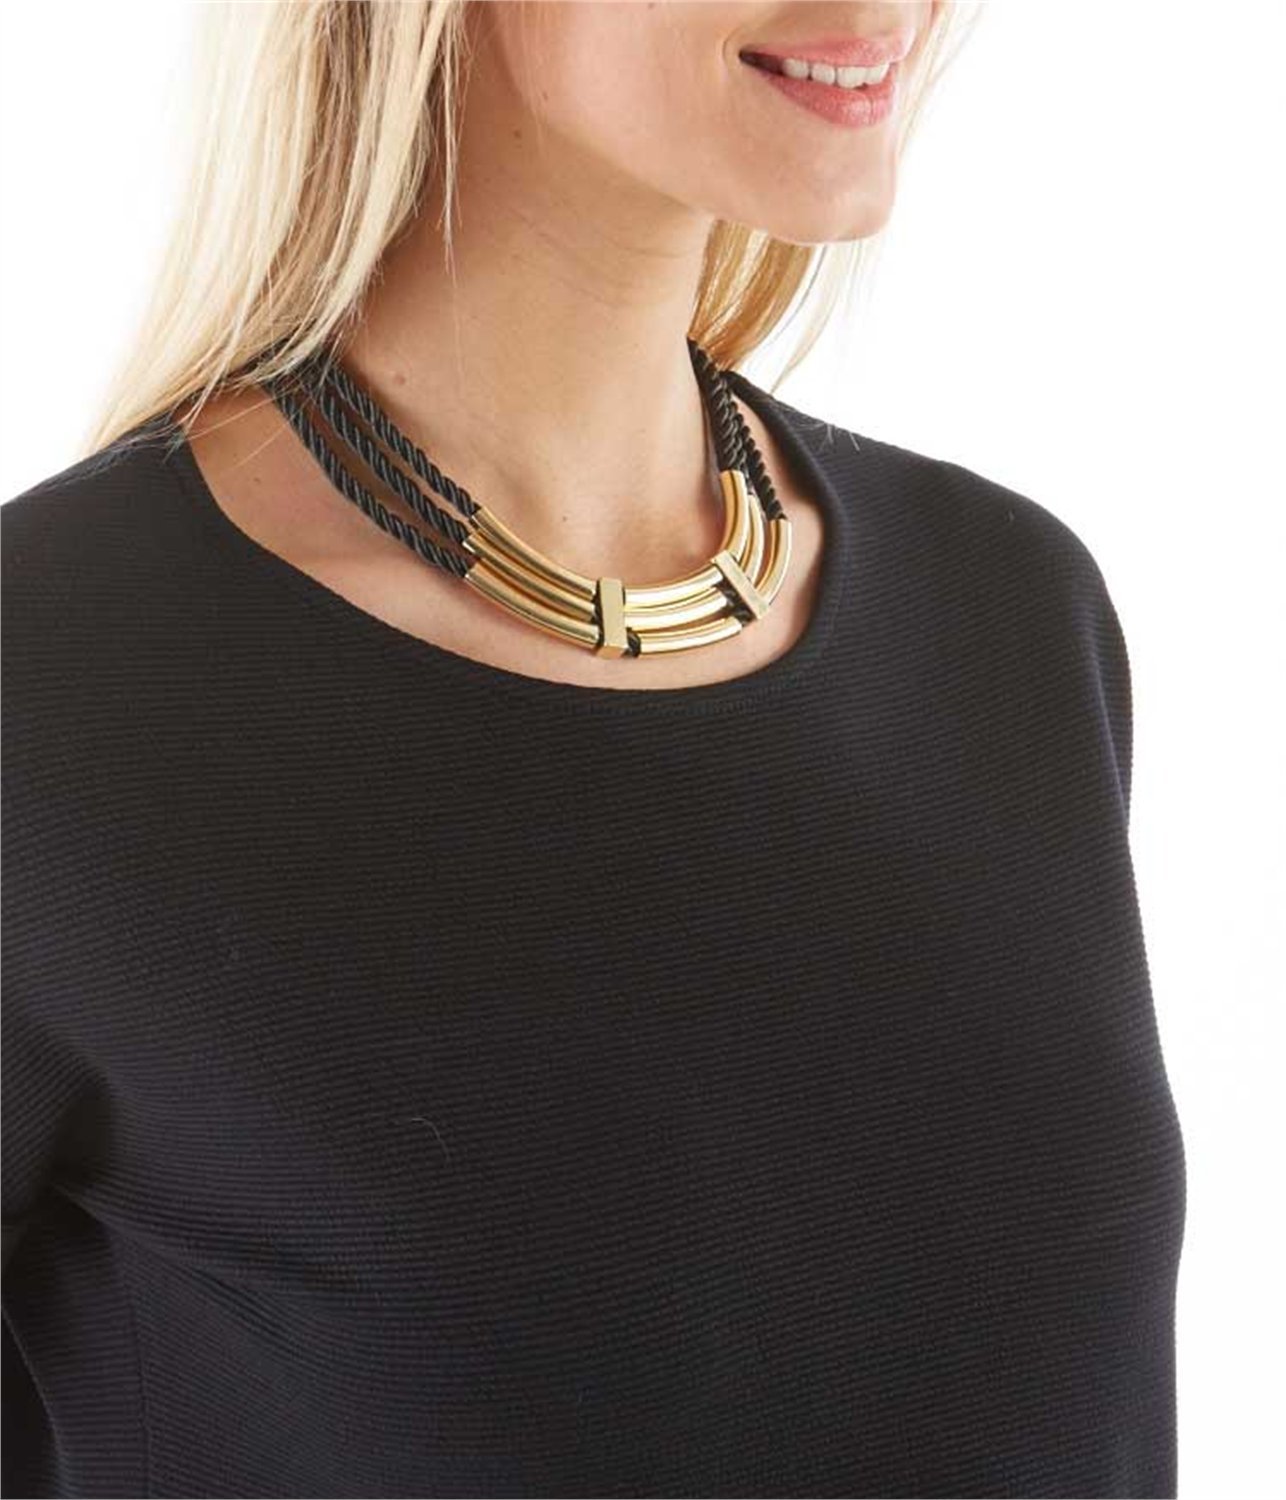 Camaieu fekete-arany női nyaklánc 2015 fotója